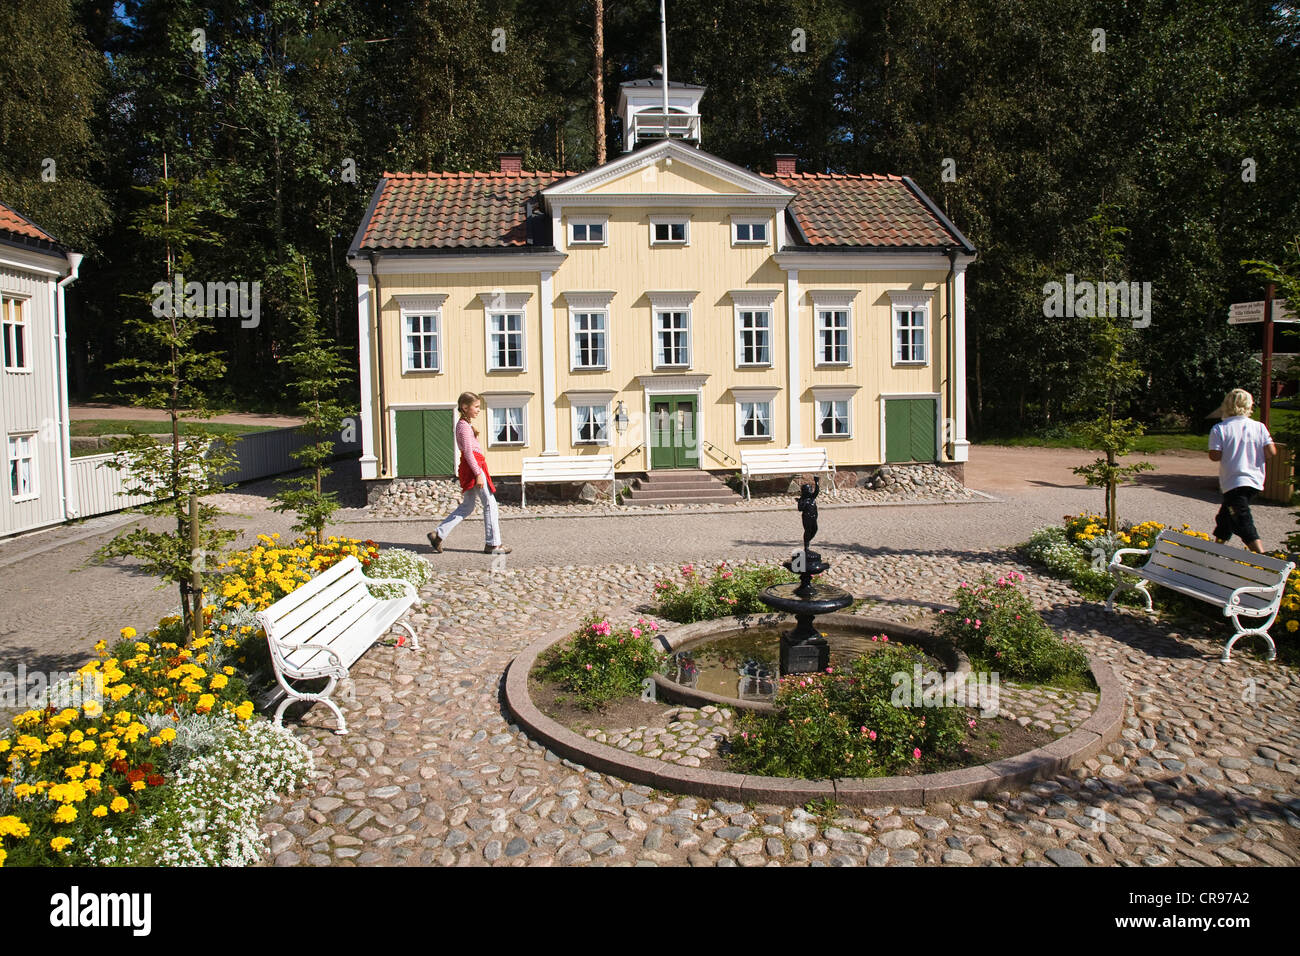 Astrid Lindgren Vaerld oder Astrid Lindgren World Themenpark, Vimmerby, Småland, Südschweden, Europa Stockfoto